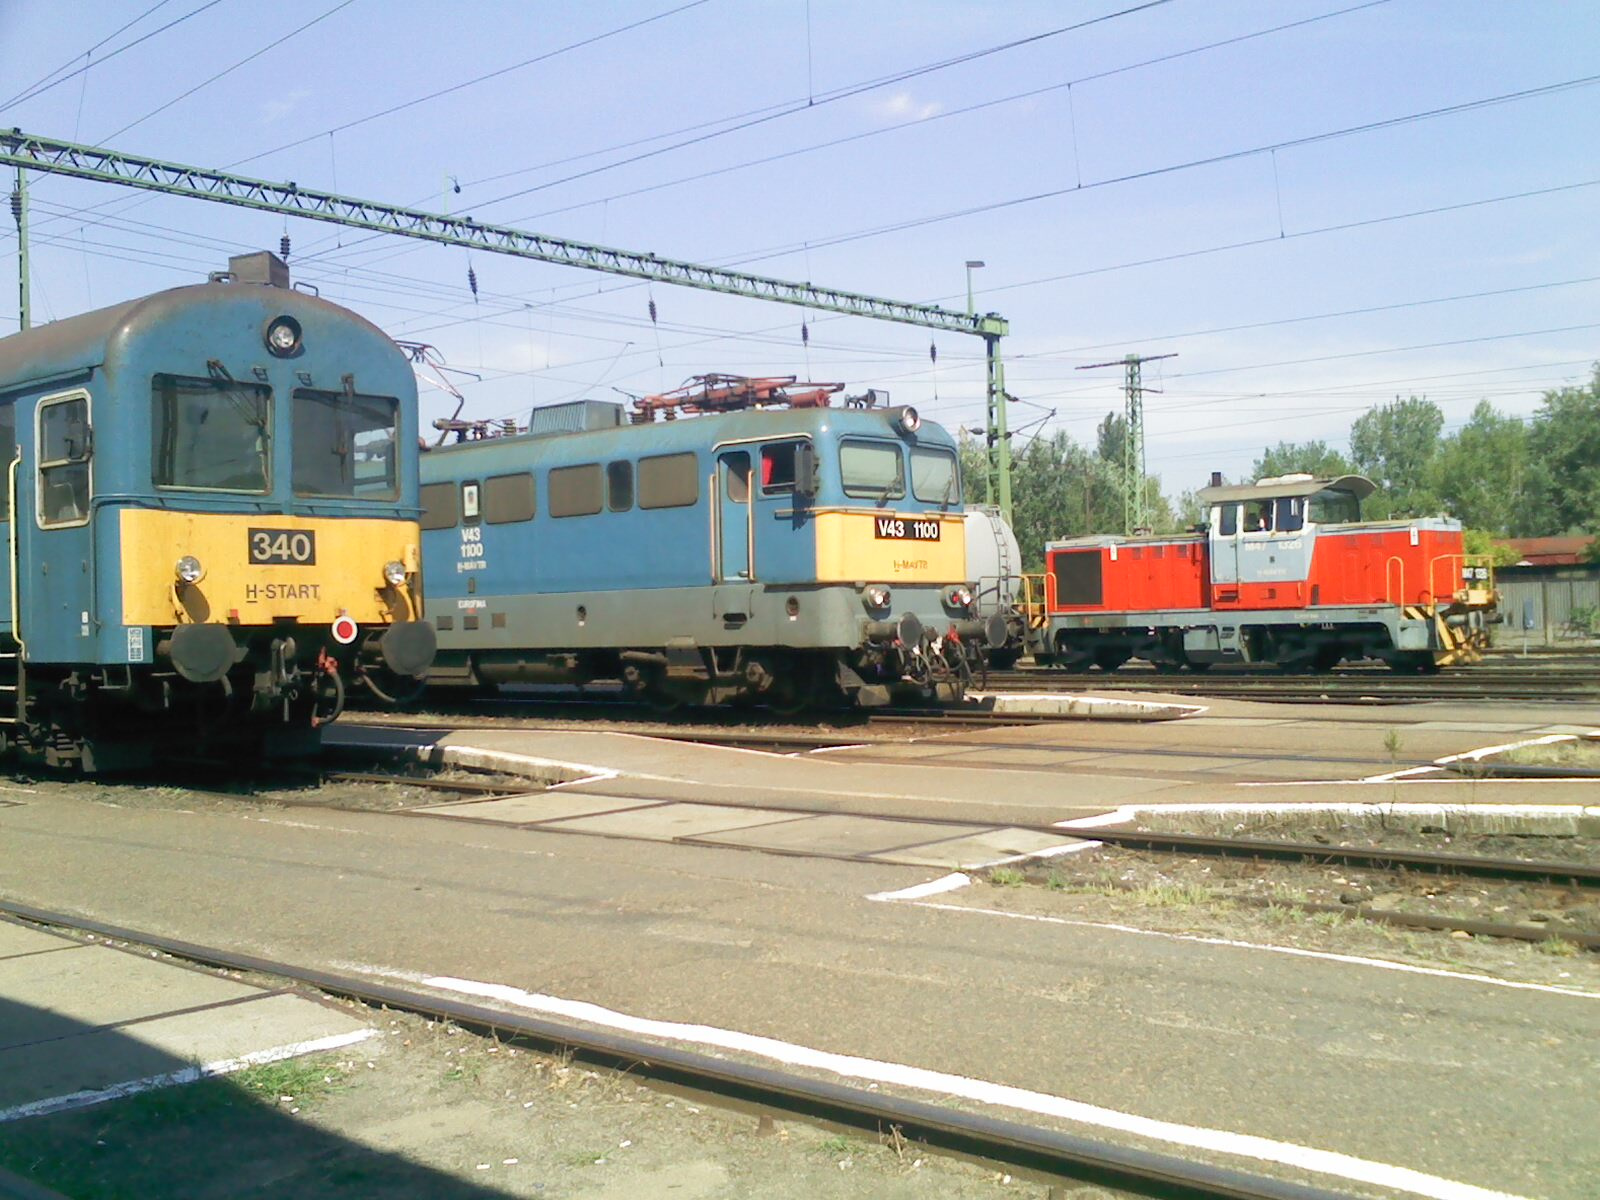 V43-1100 & M47-1326